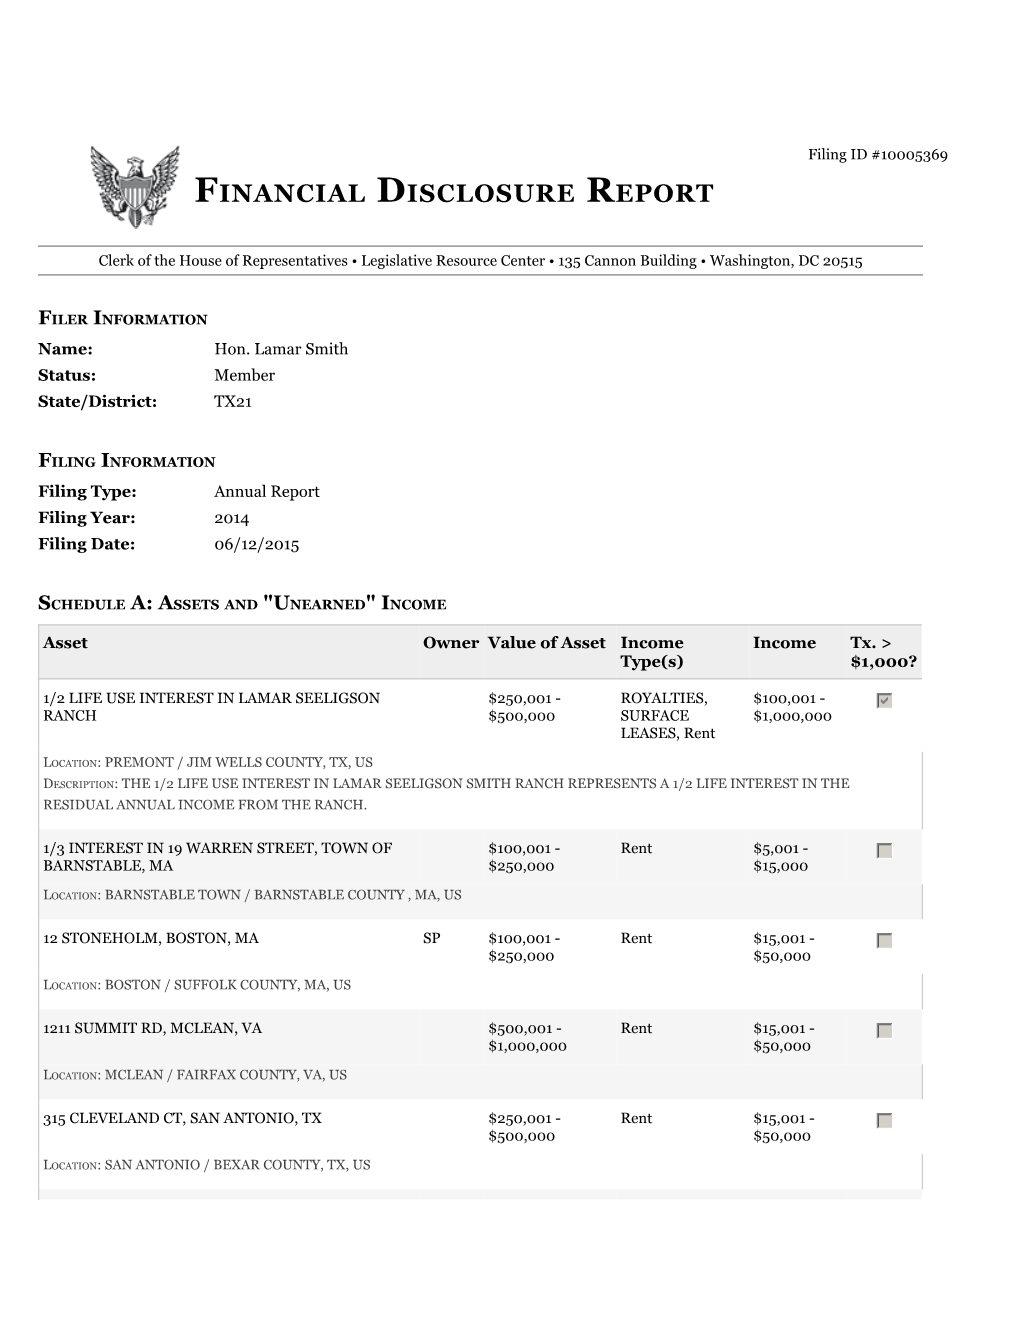 Financial Disclosure Report